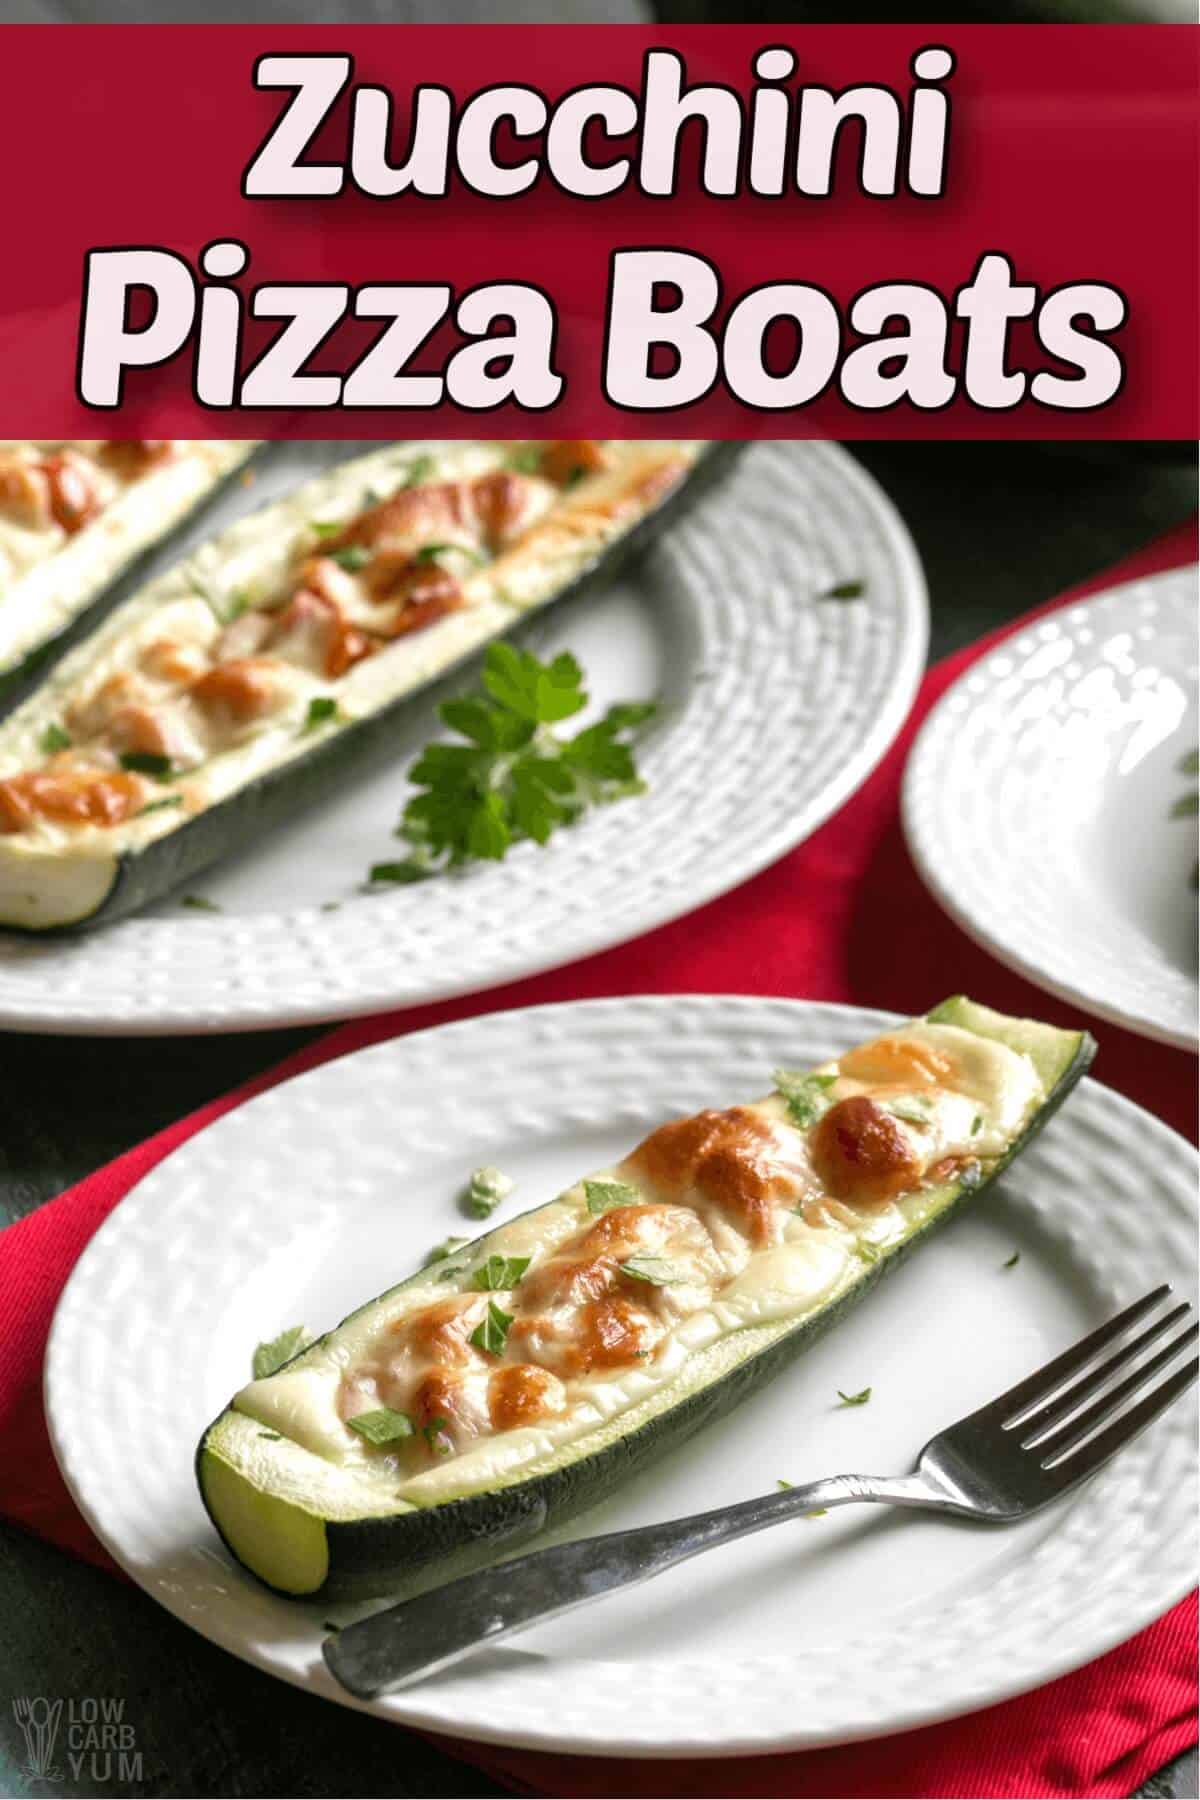 zucchini pizza boats cover image